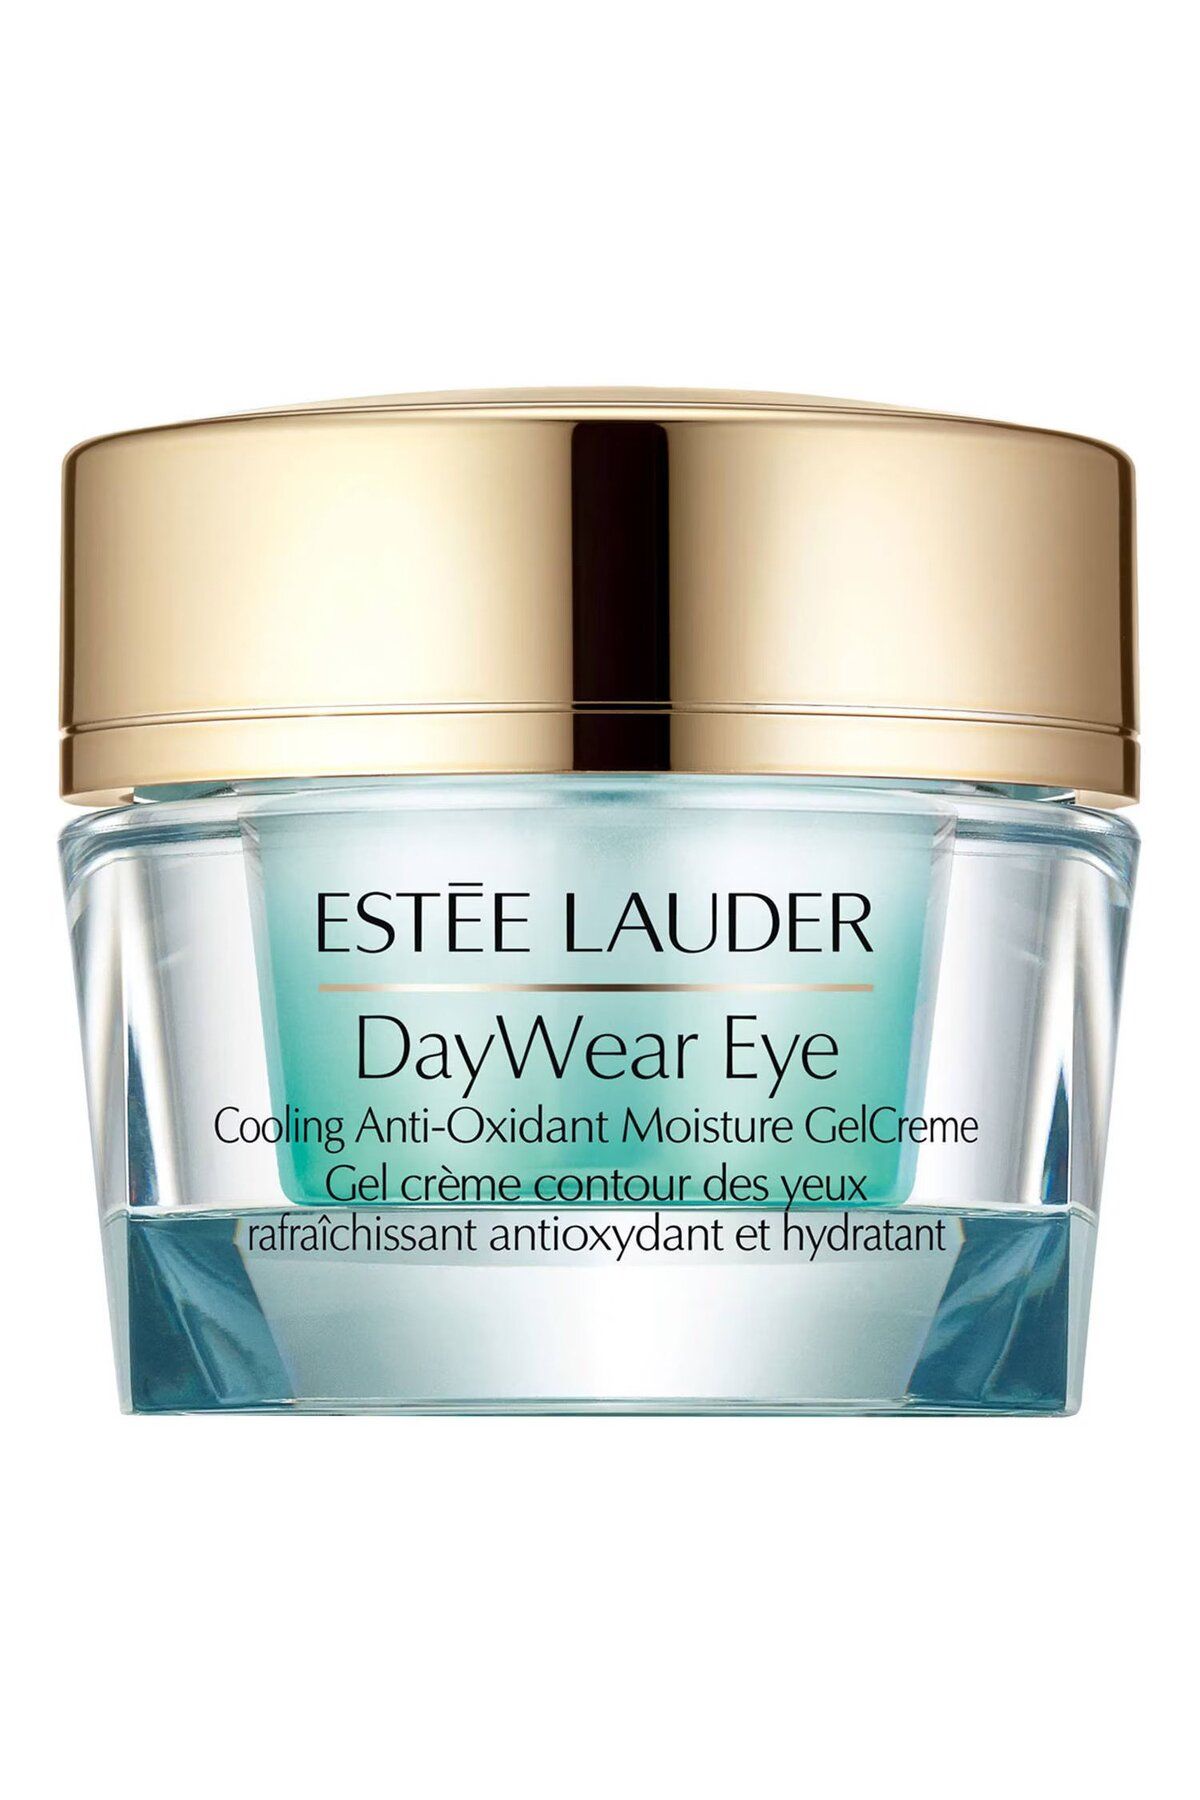 Estee Lauder DayWear Eye-Göz Çevresini Yatıştıran, Aydınlık Görünüm Veren Nemlendirici Göz Çevresi Jel Krem 15 ml